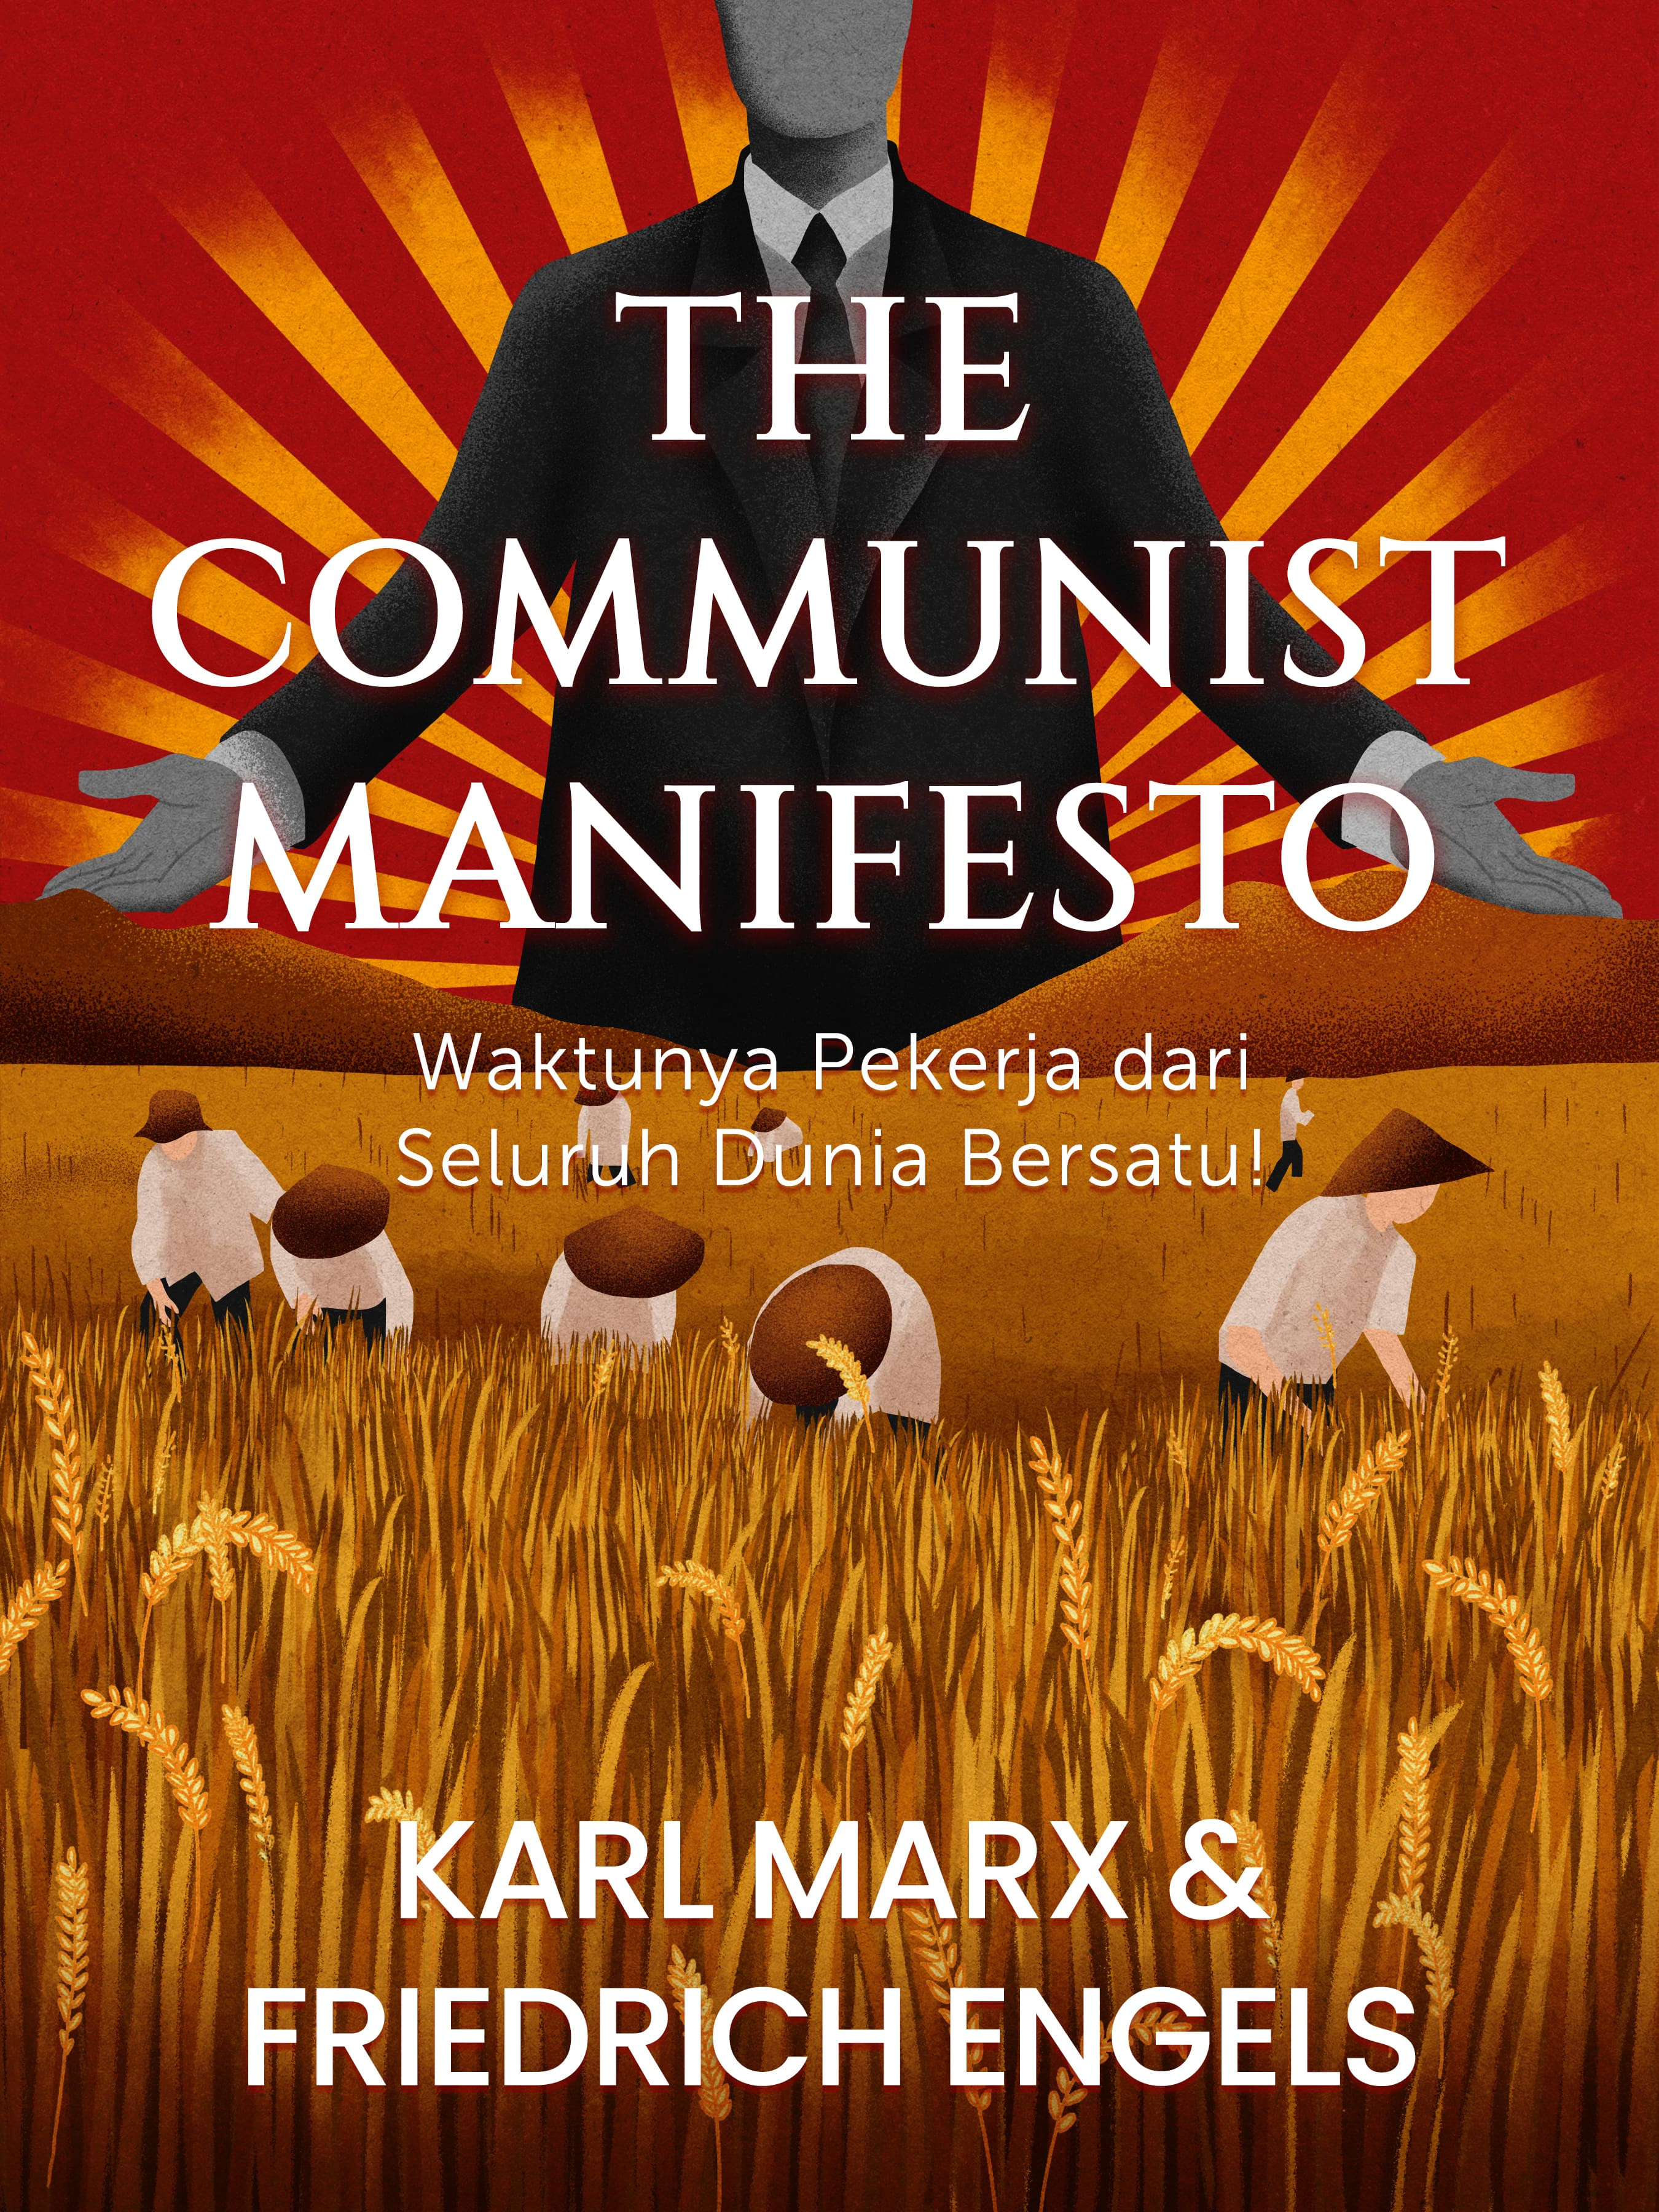 #7 Semua kritik umum terkait komunisme dengan mudah bisa disangkal.